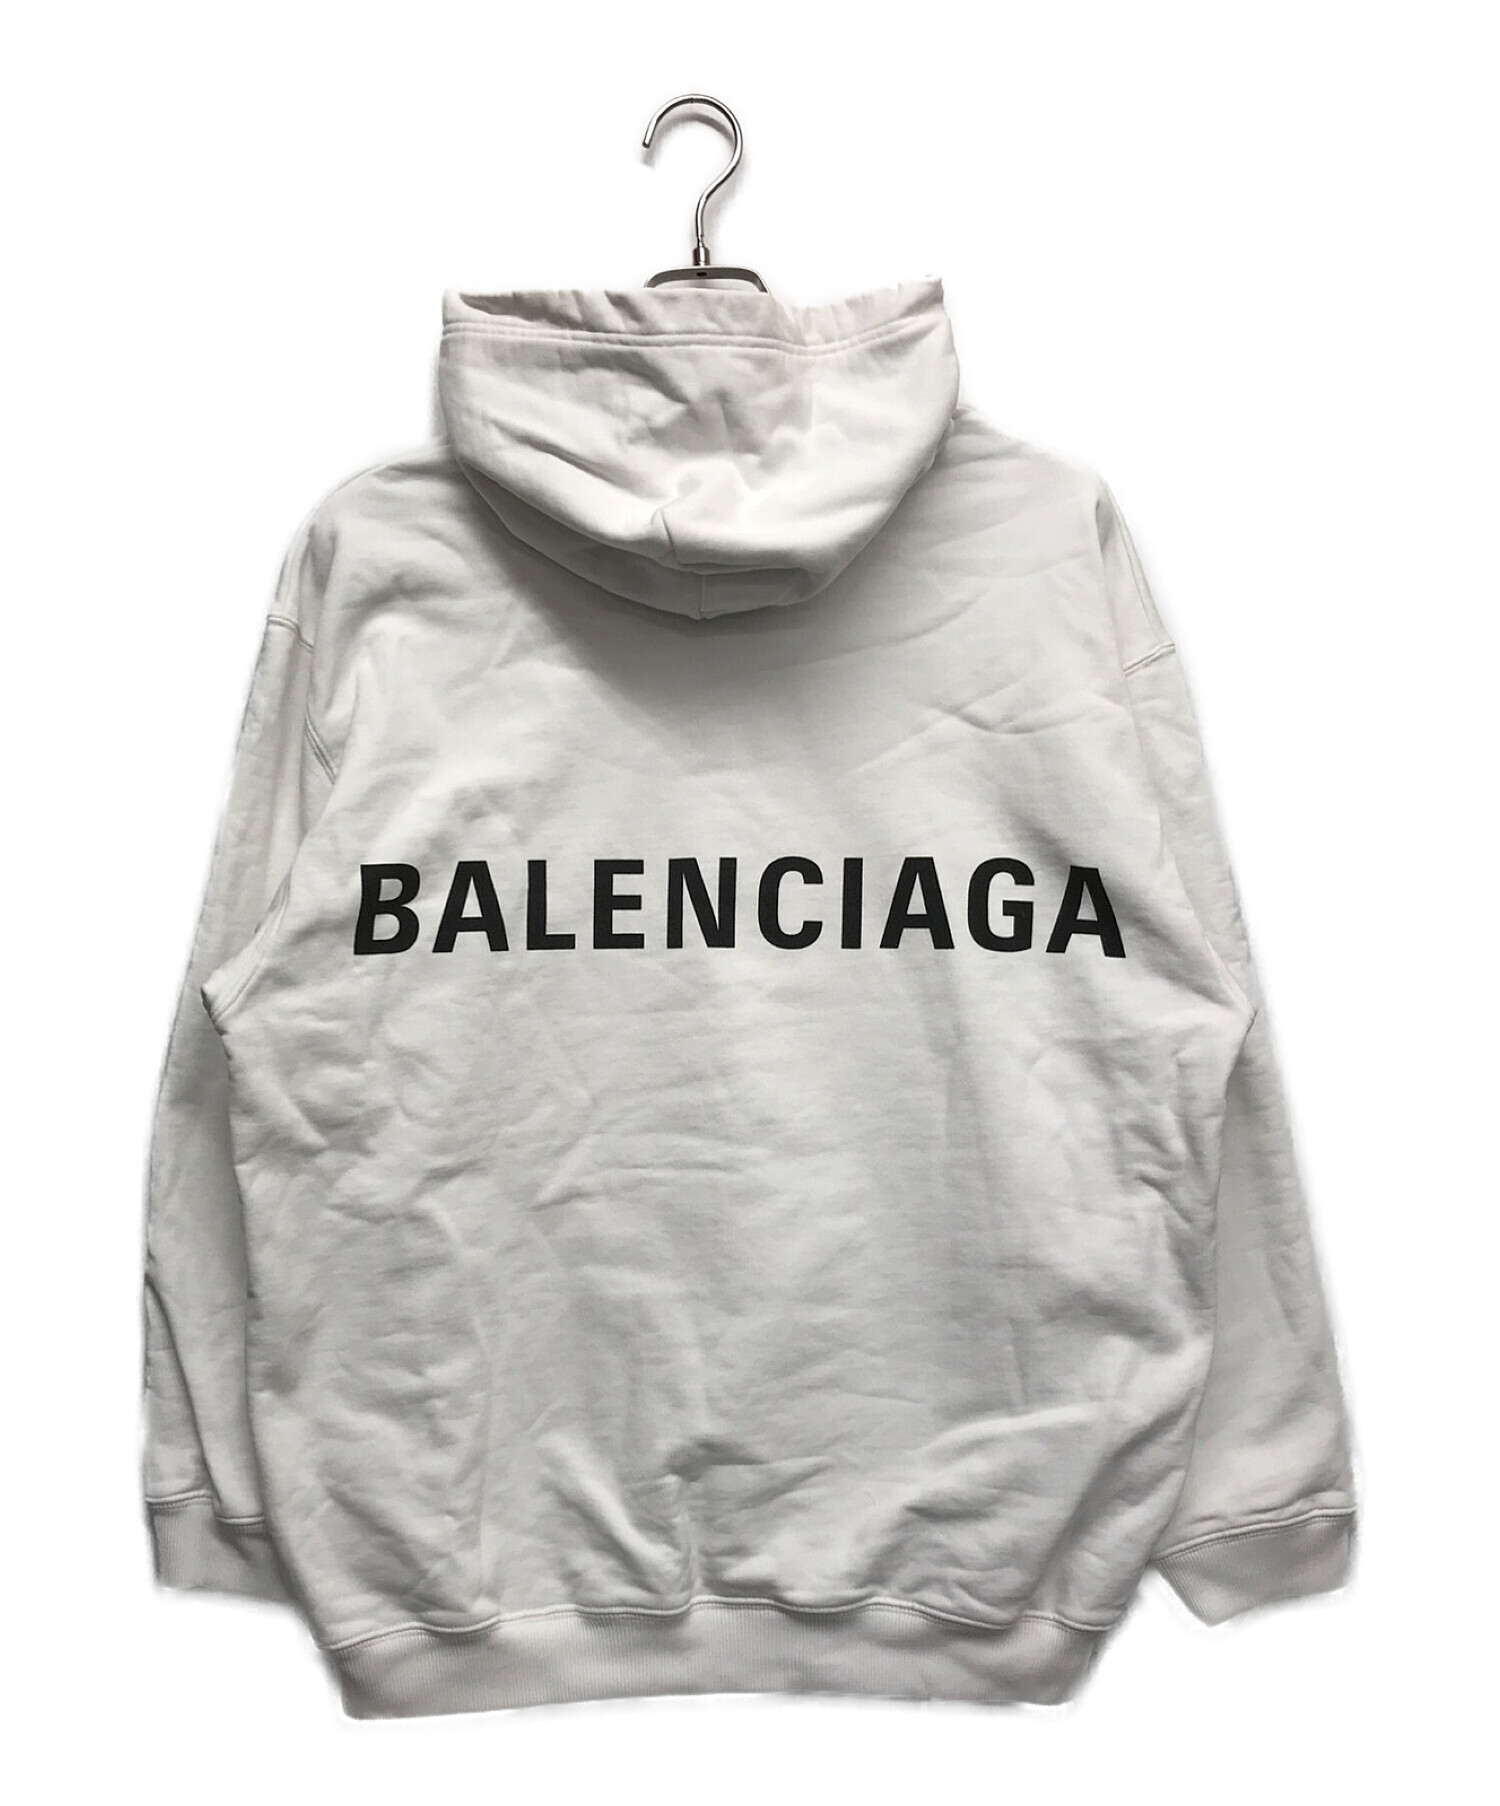 BALENCIAGA (バレンシアガ) バックロゴパーカー ホワイト サイズ:XS